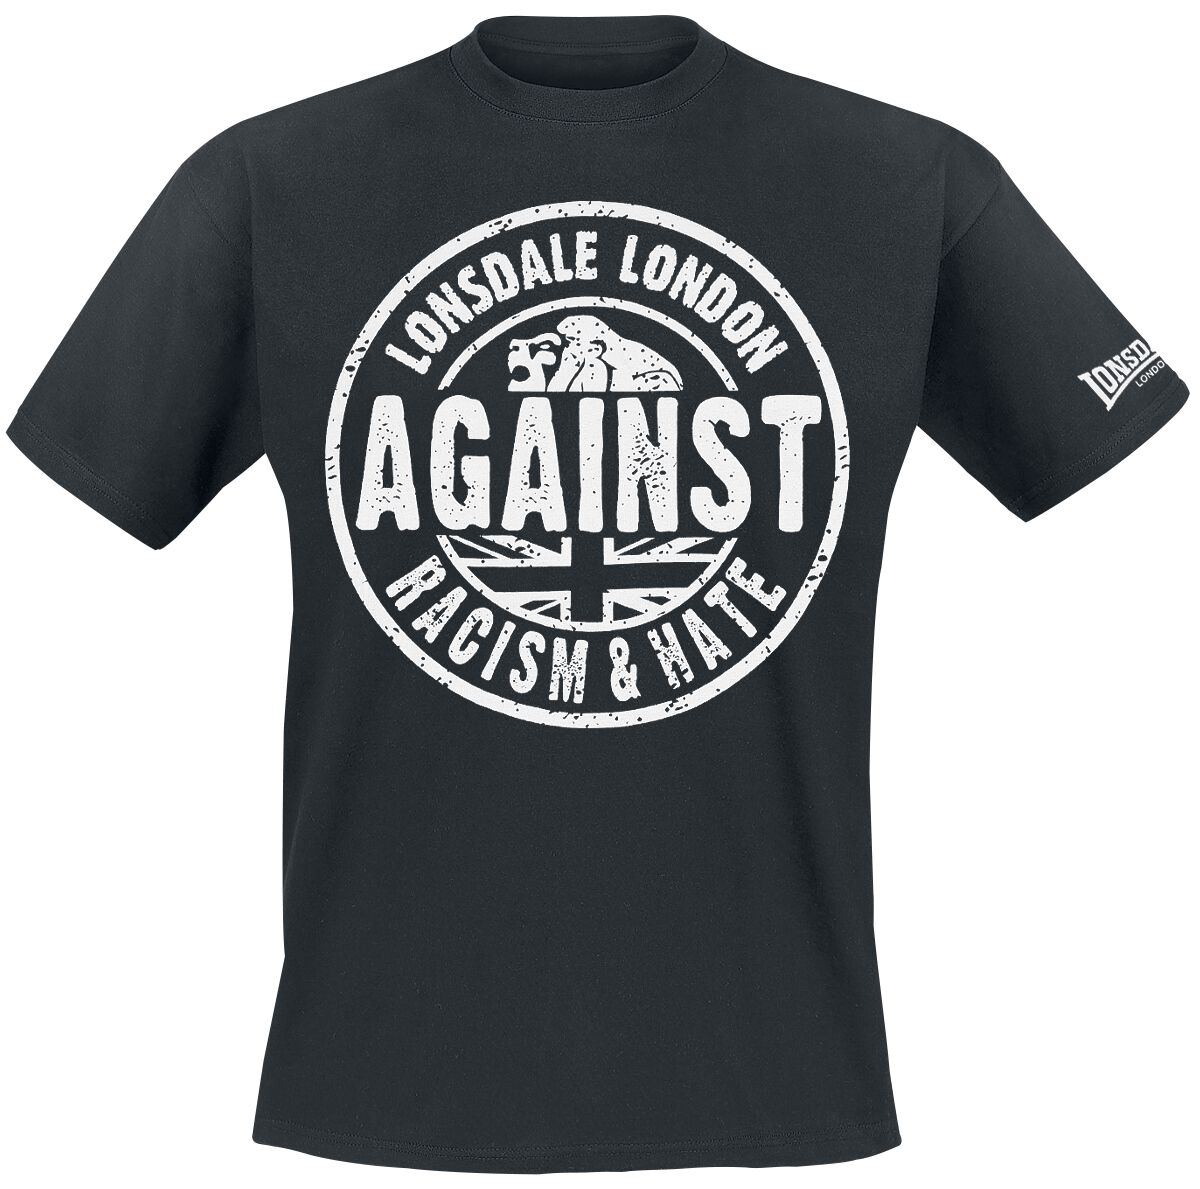 Lonsdale London T-Shirt - Against Racism - S bis 3XL - für Männer - Größe 3XL - schwarz